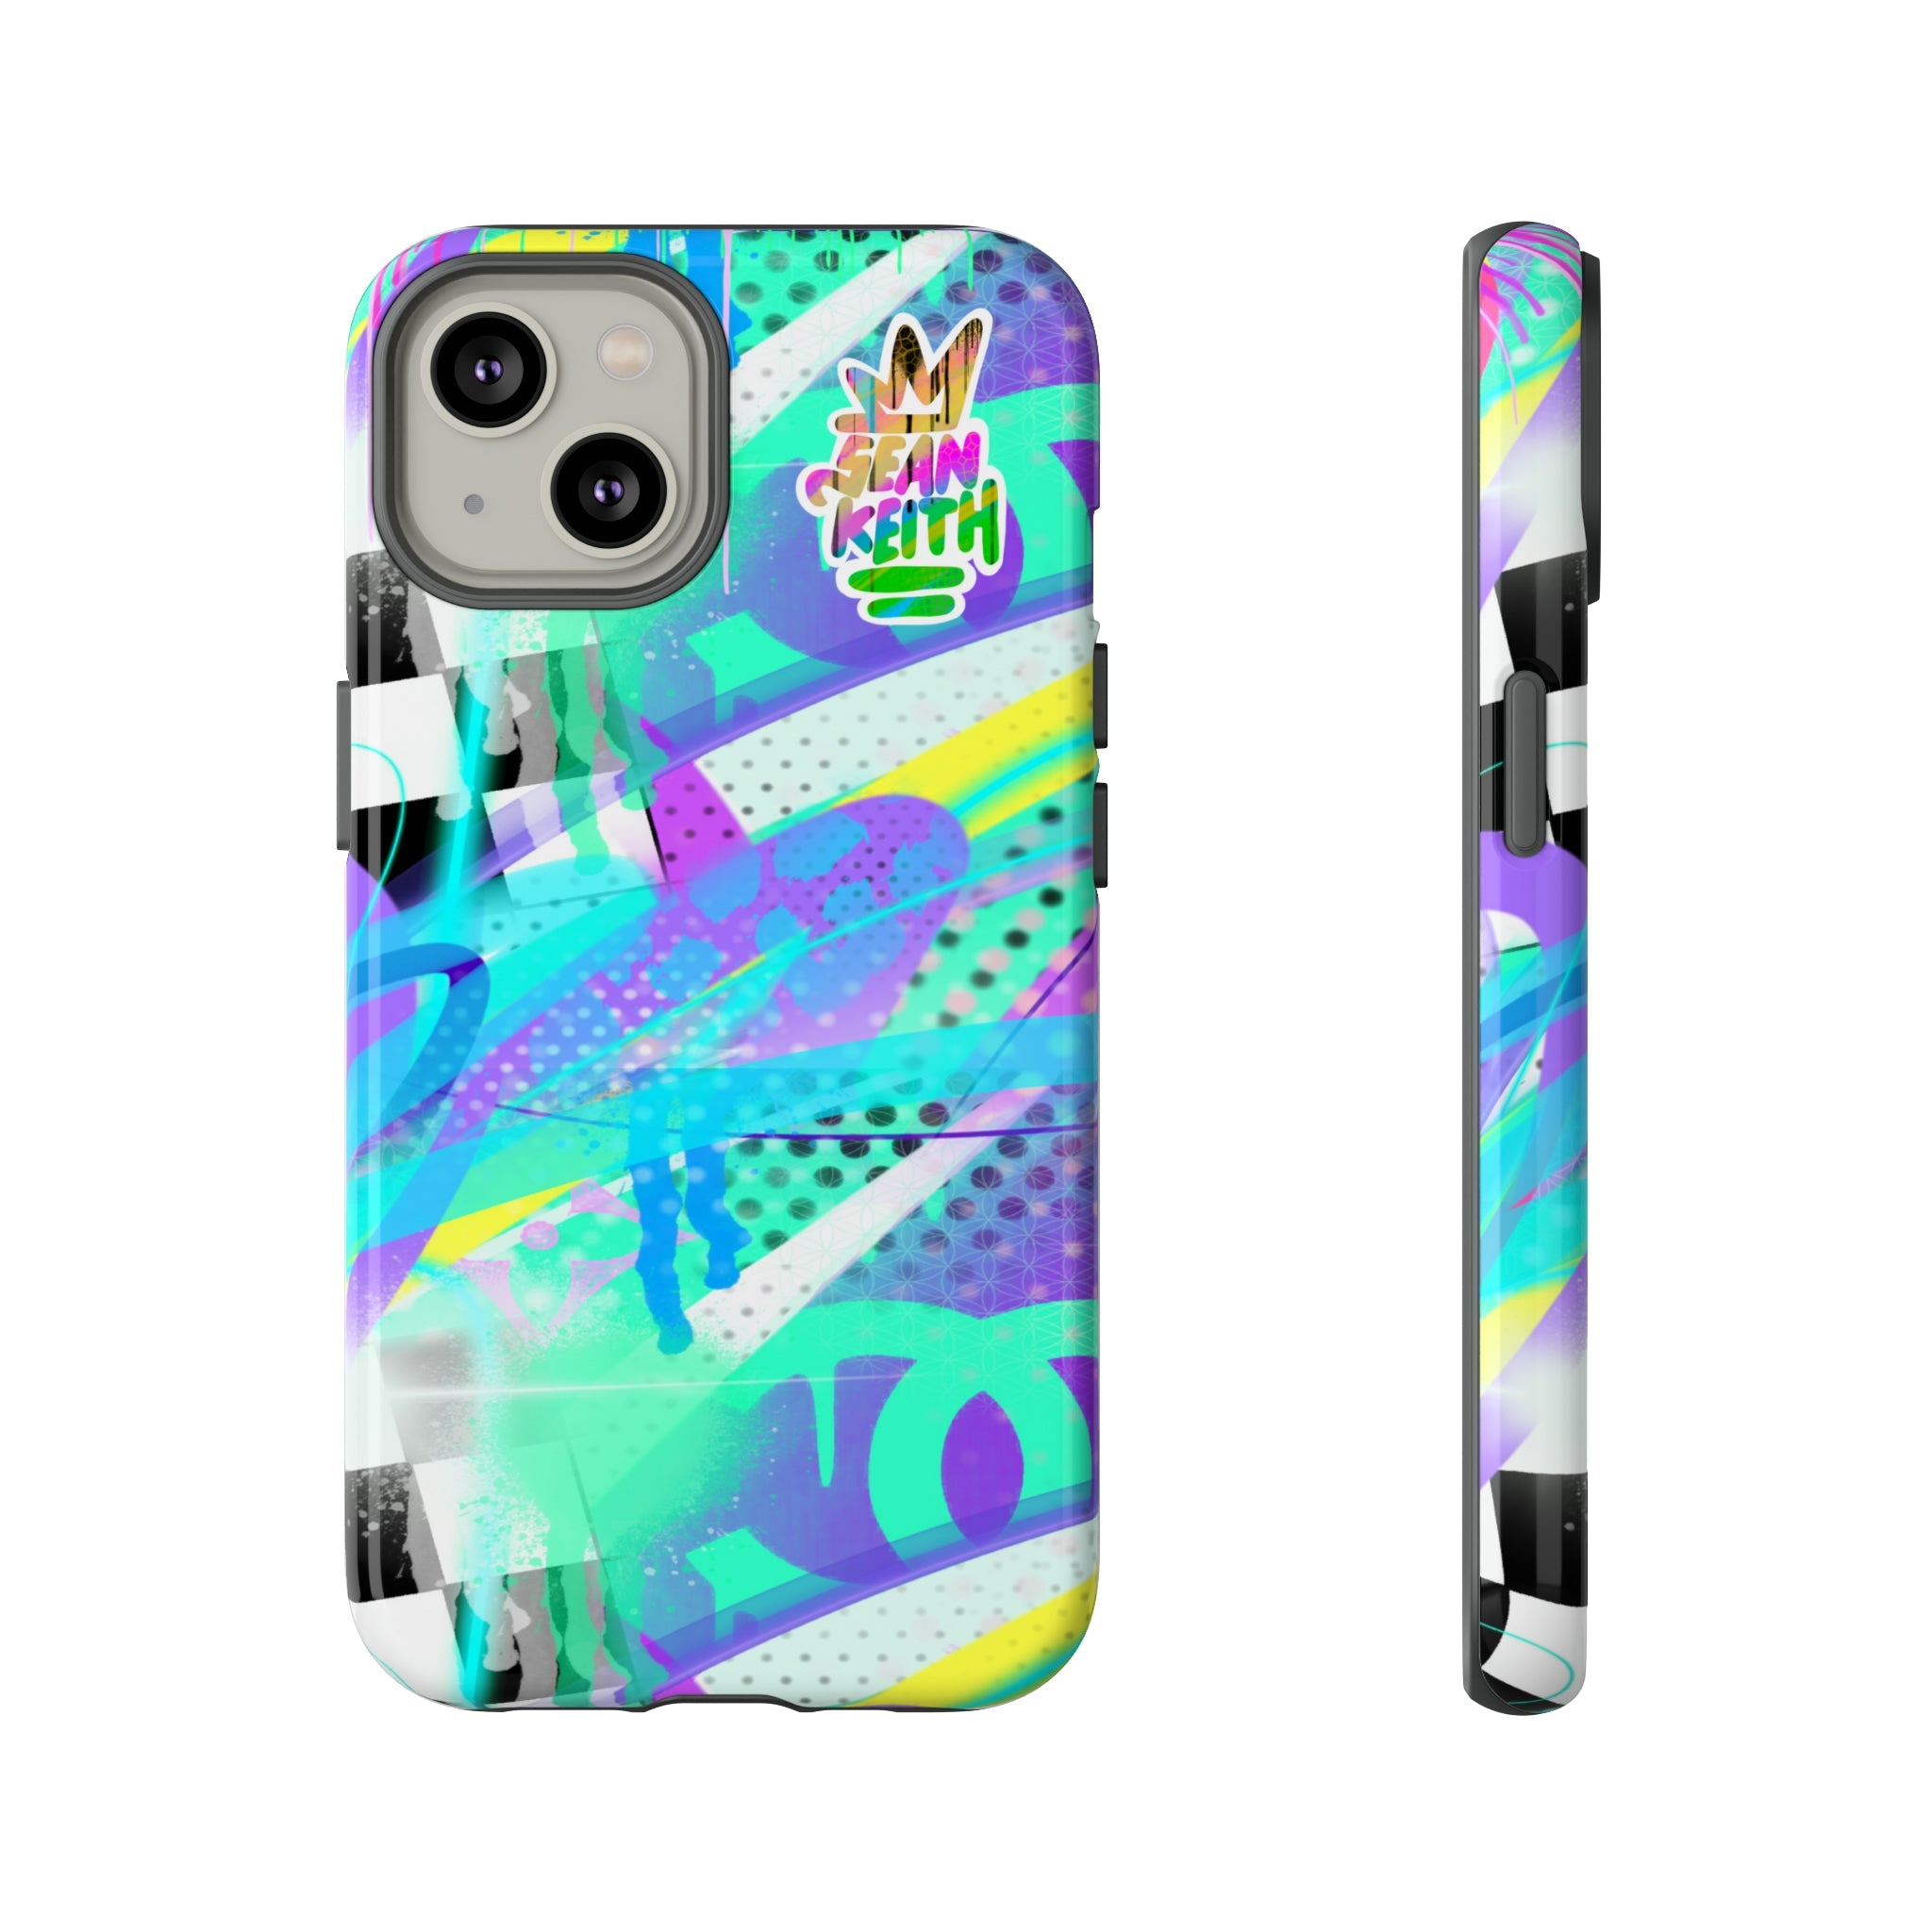 Sean Keith custom Iphone Case - Sean Keith Art